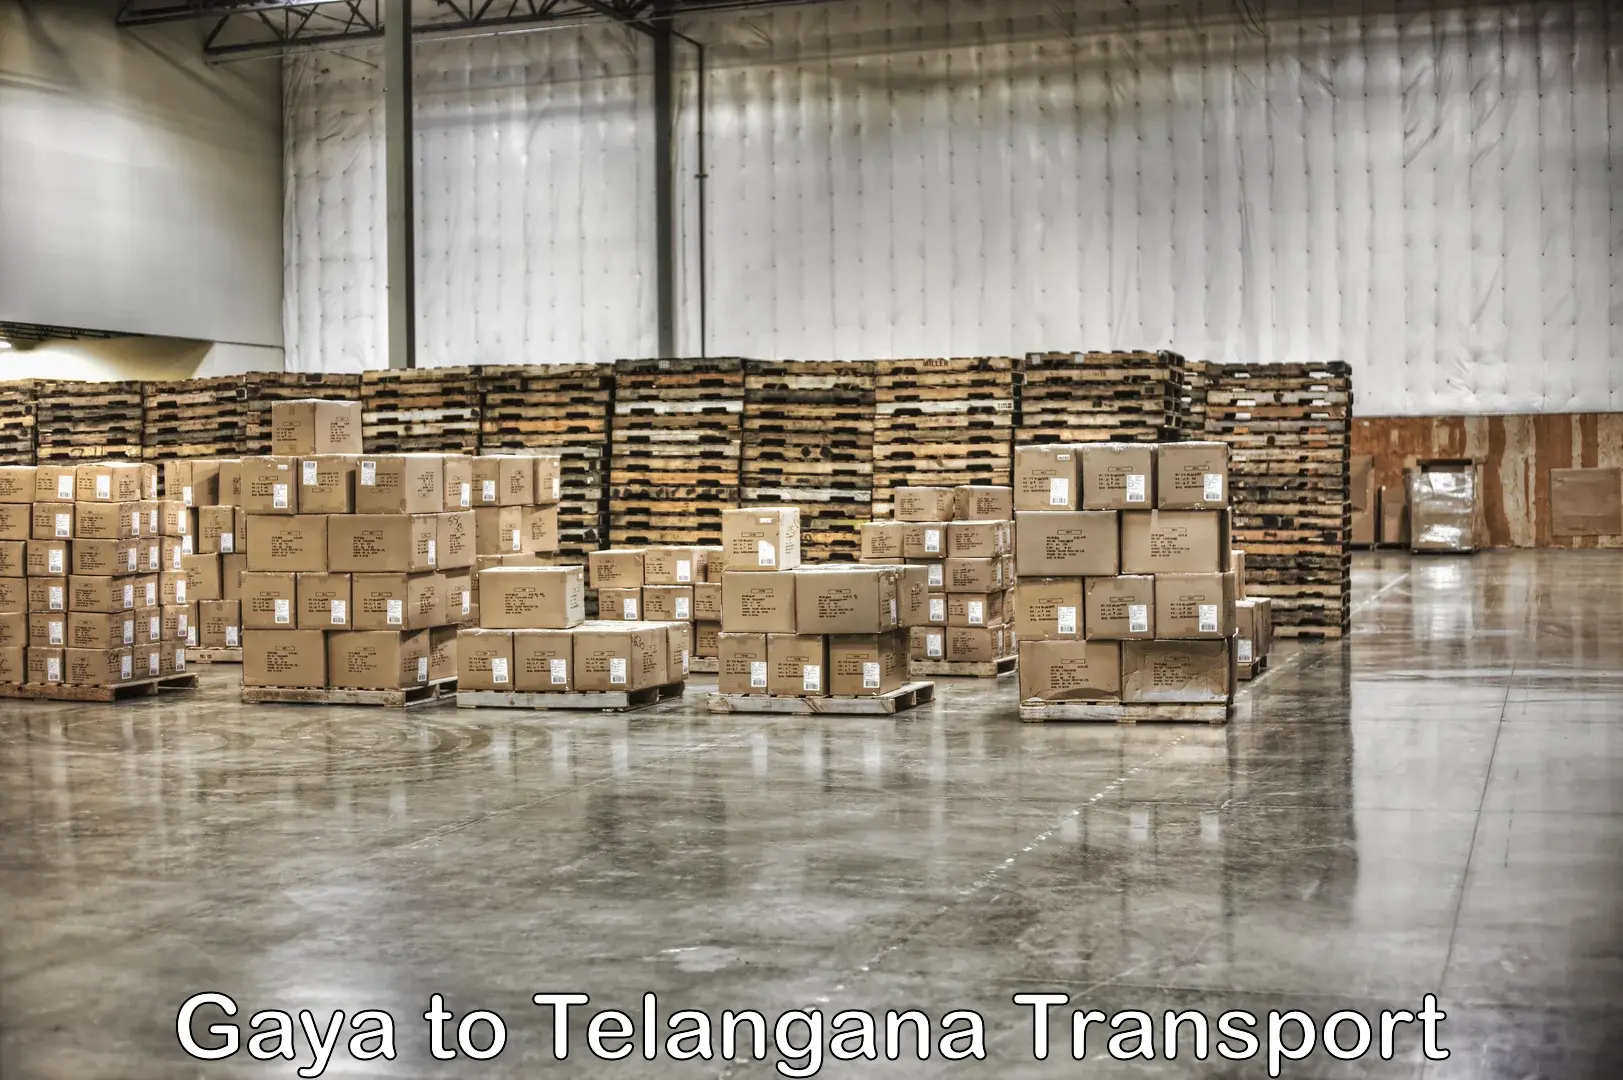 Furniture transport service Gaya to Kothagudem